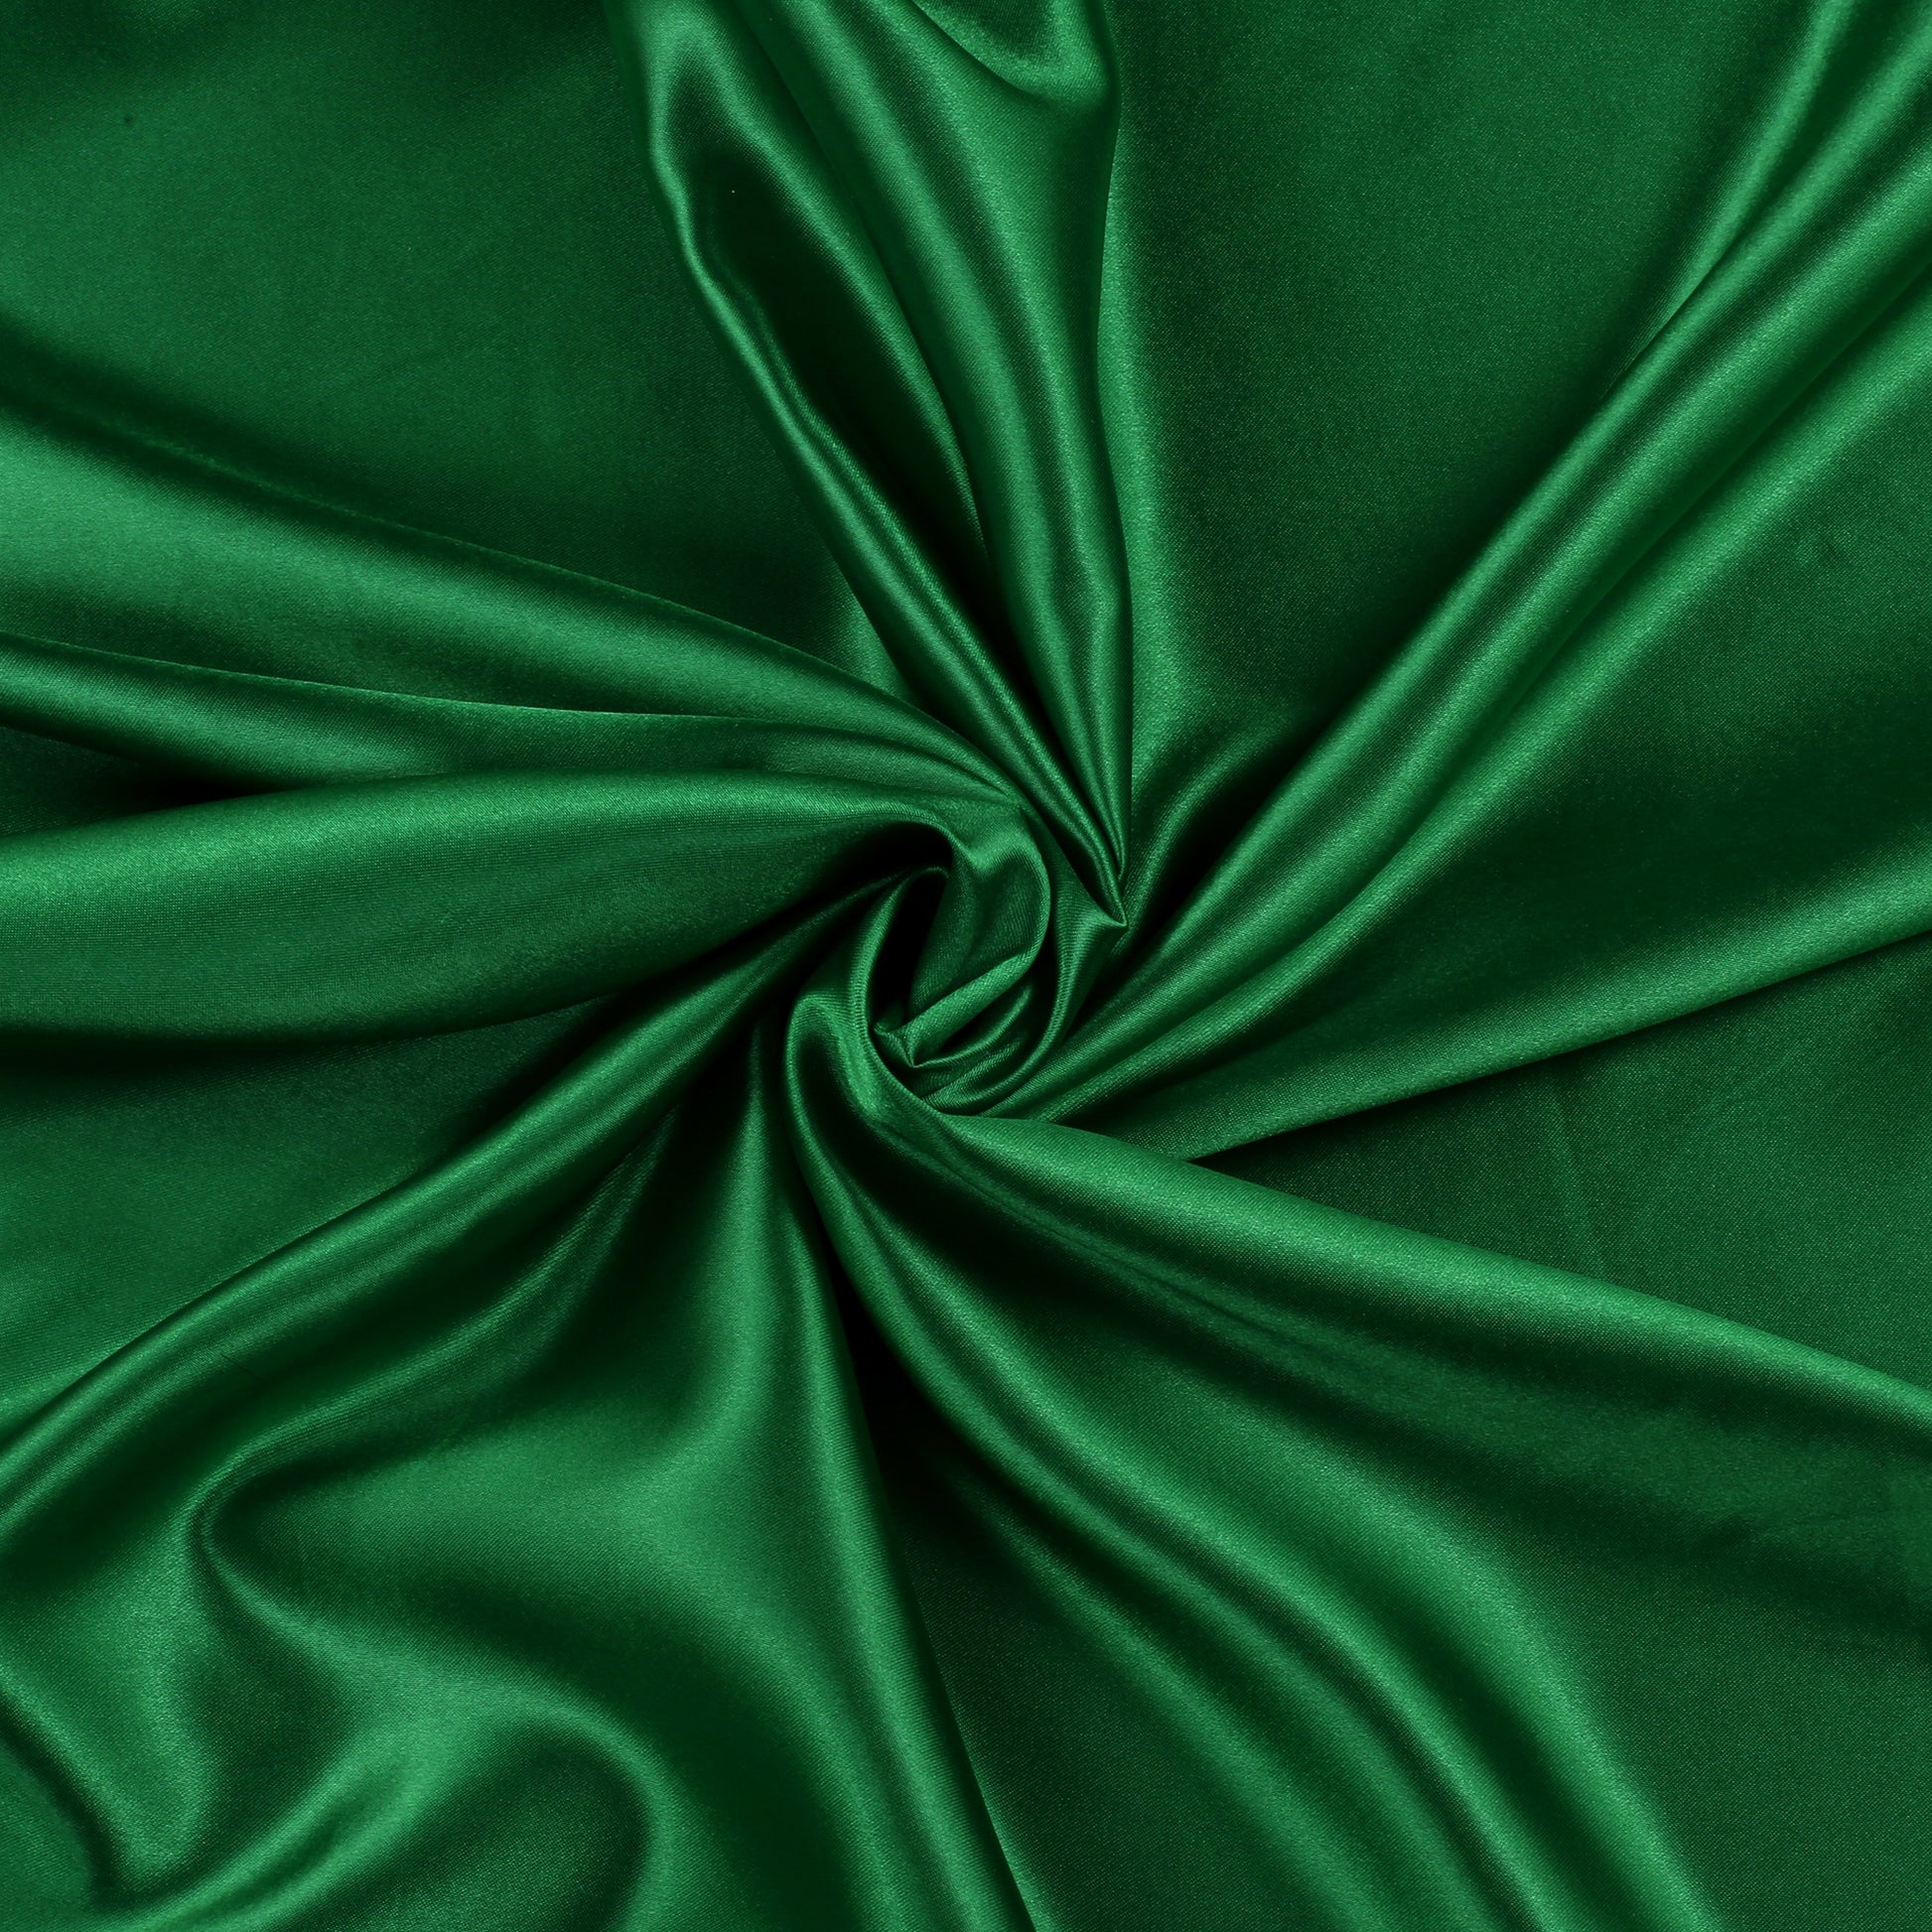 Green,c417fffc-0755-4da8-b5d0-d9552f82bb23